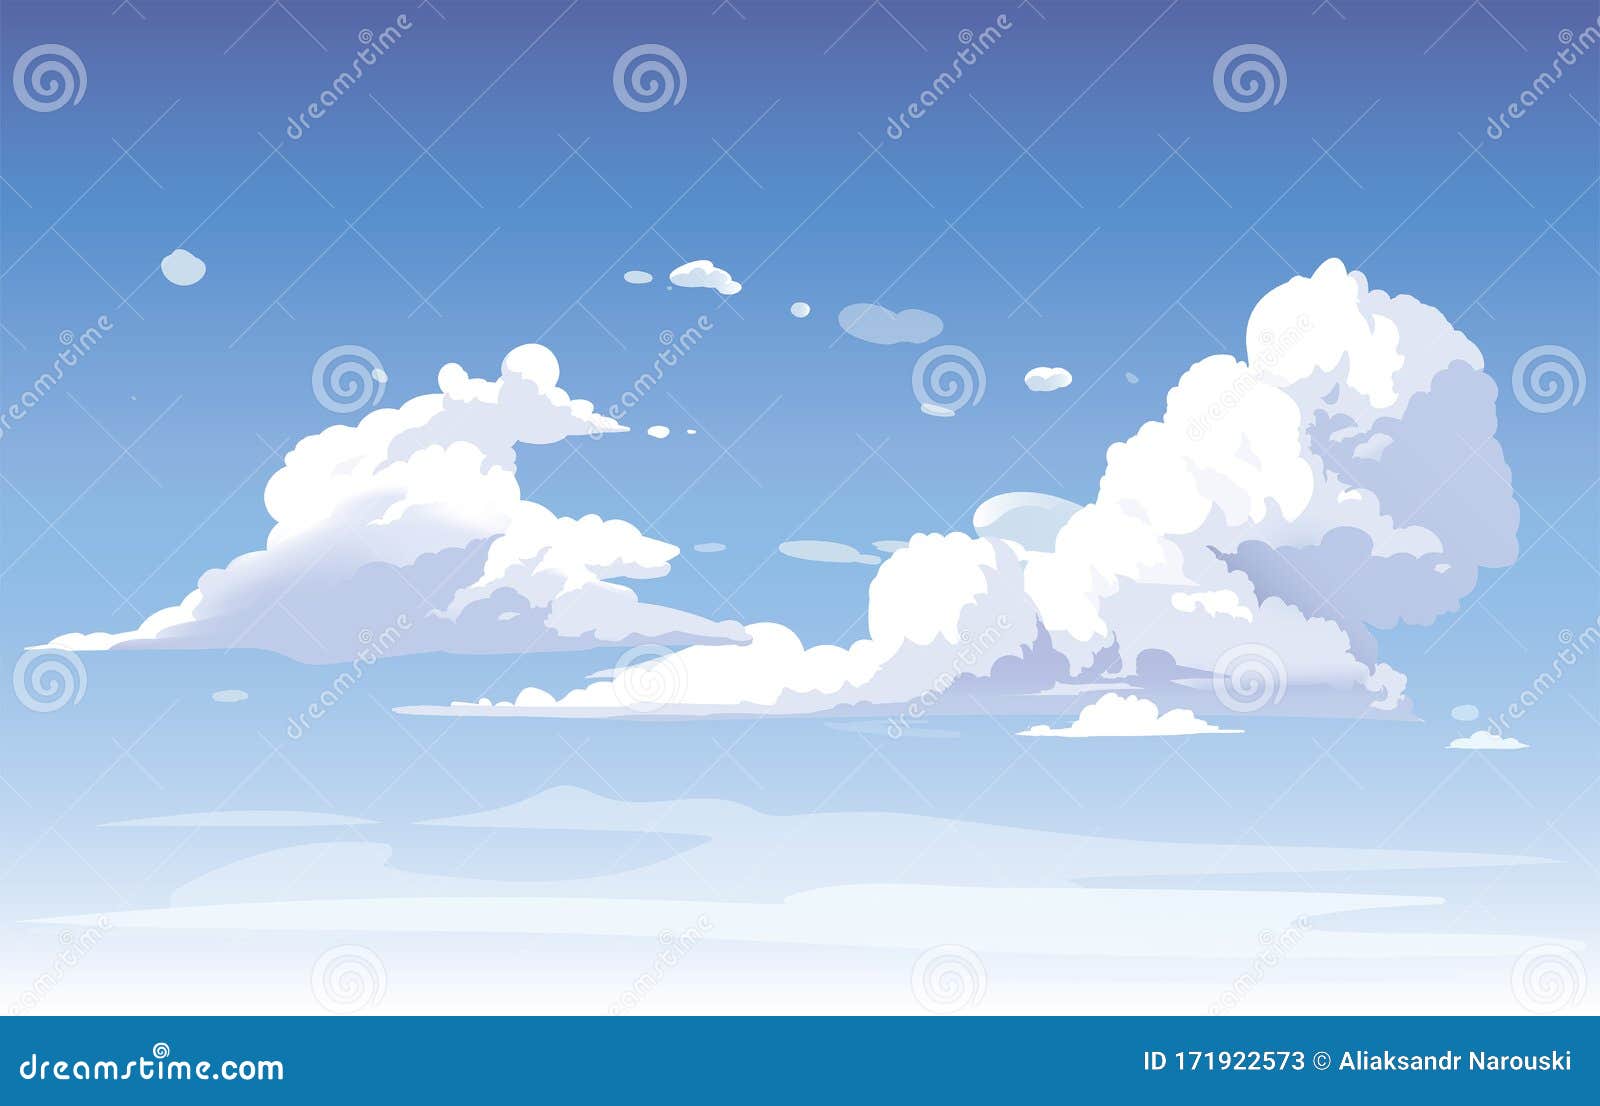 cloud PNG image transparent image download, size: 640x331px